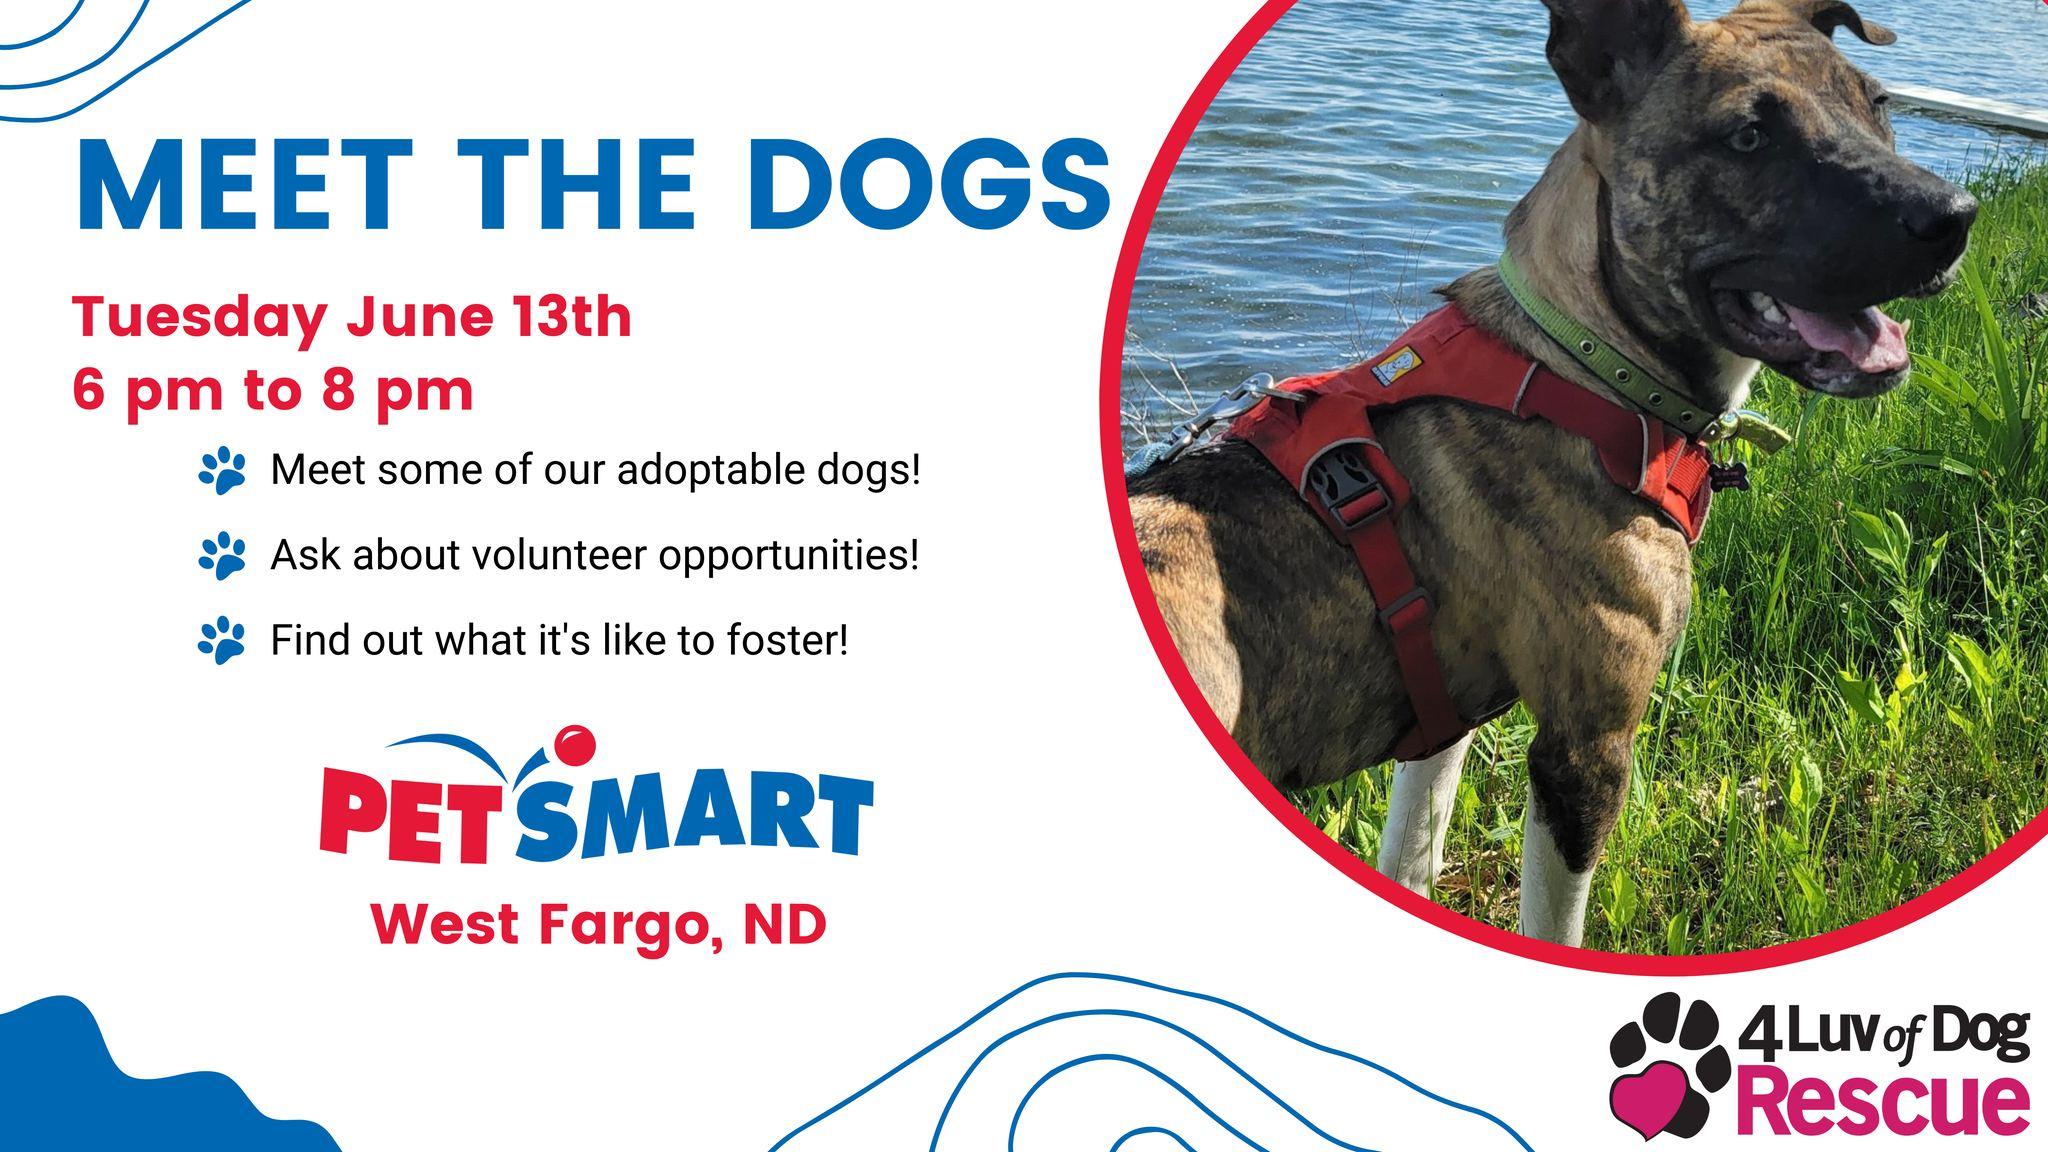 Meet the Dogs - West Fargo, ND PetSmart Event - June 13, 2023